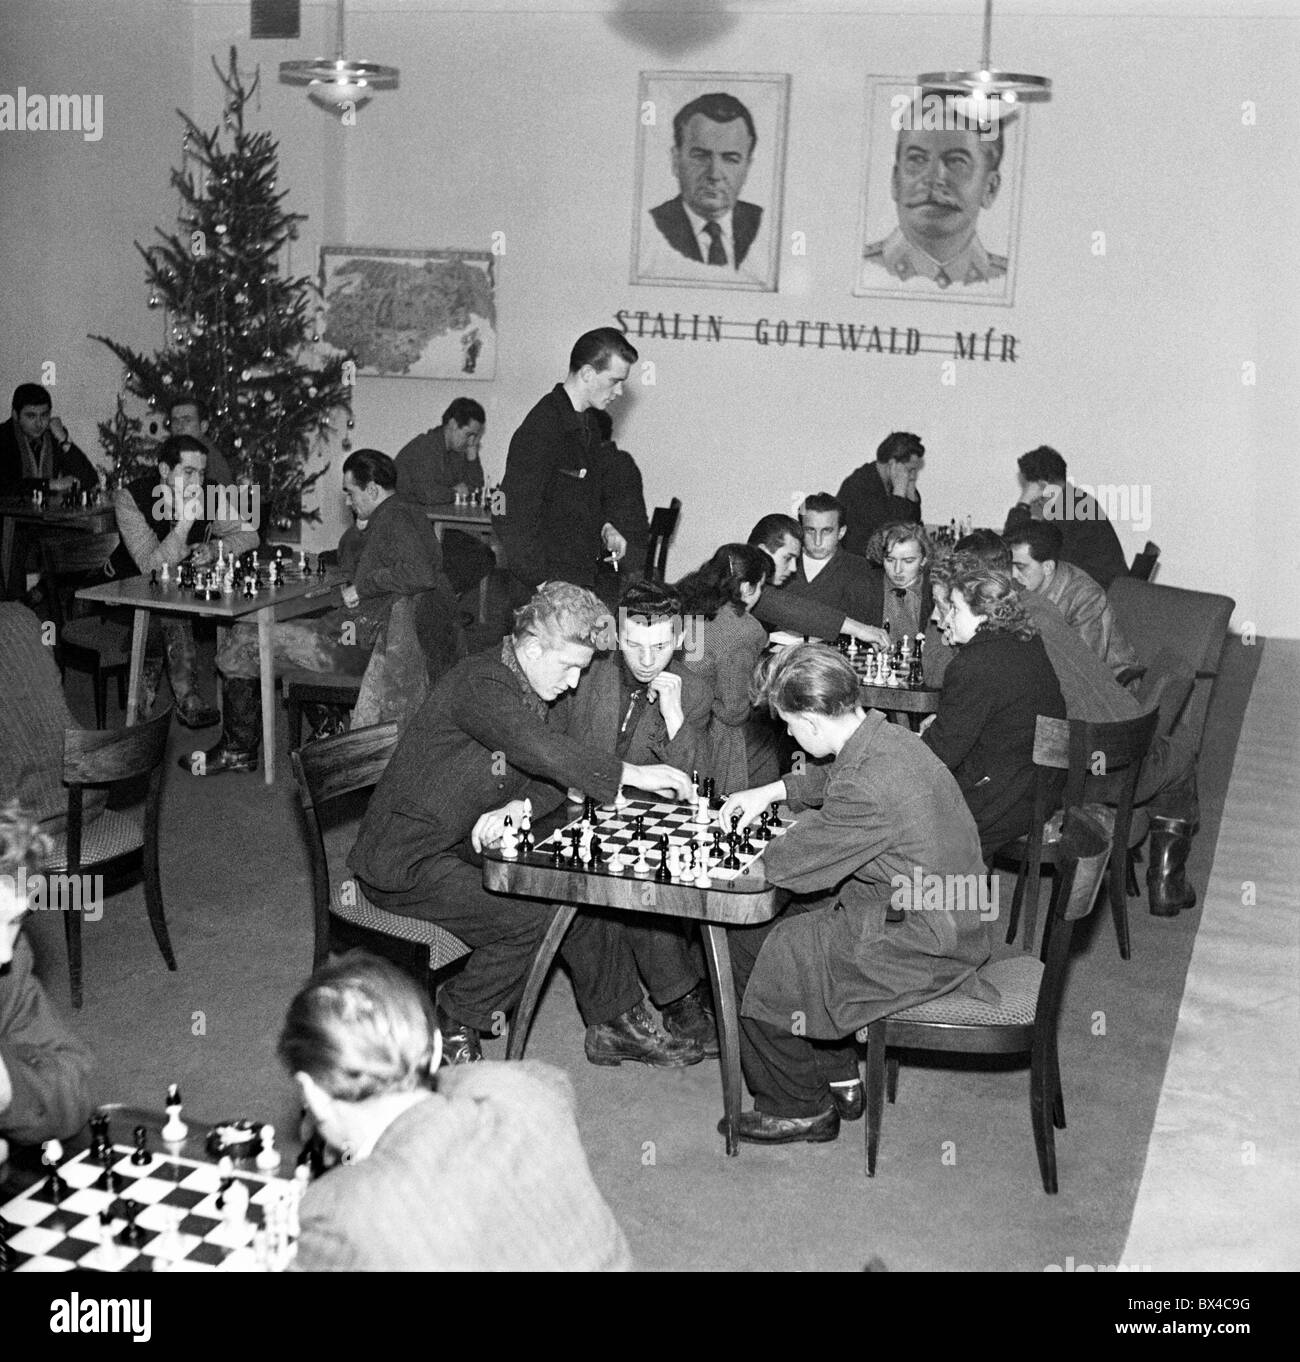 Ostrava, Kuncice, Cecoslovacchia, fonderie di acciaio lavoratori, con manifesti di Stalin e Gottwald, giocare a scacchi durante il tempo libero. Foto Stock